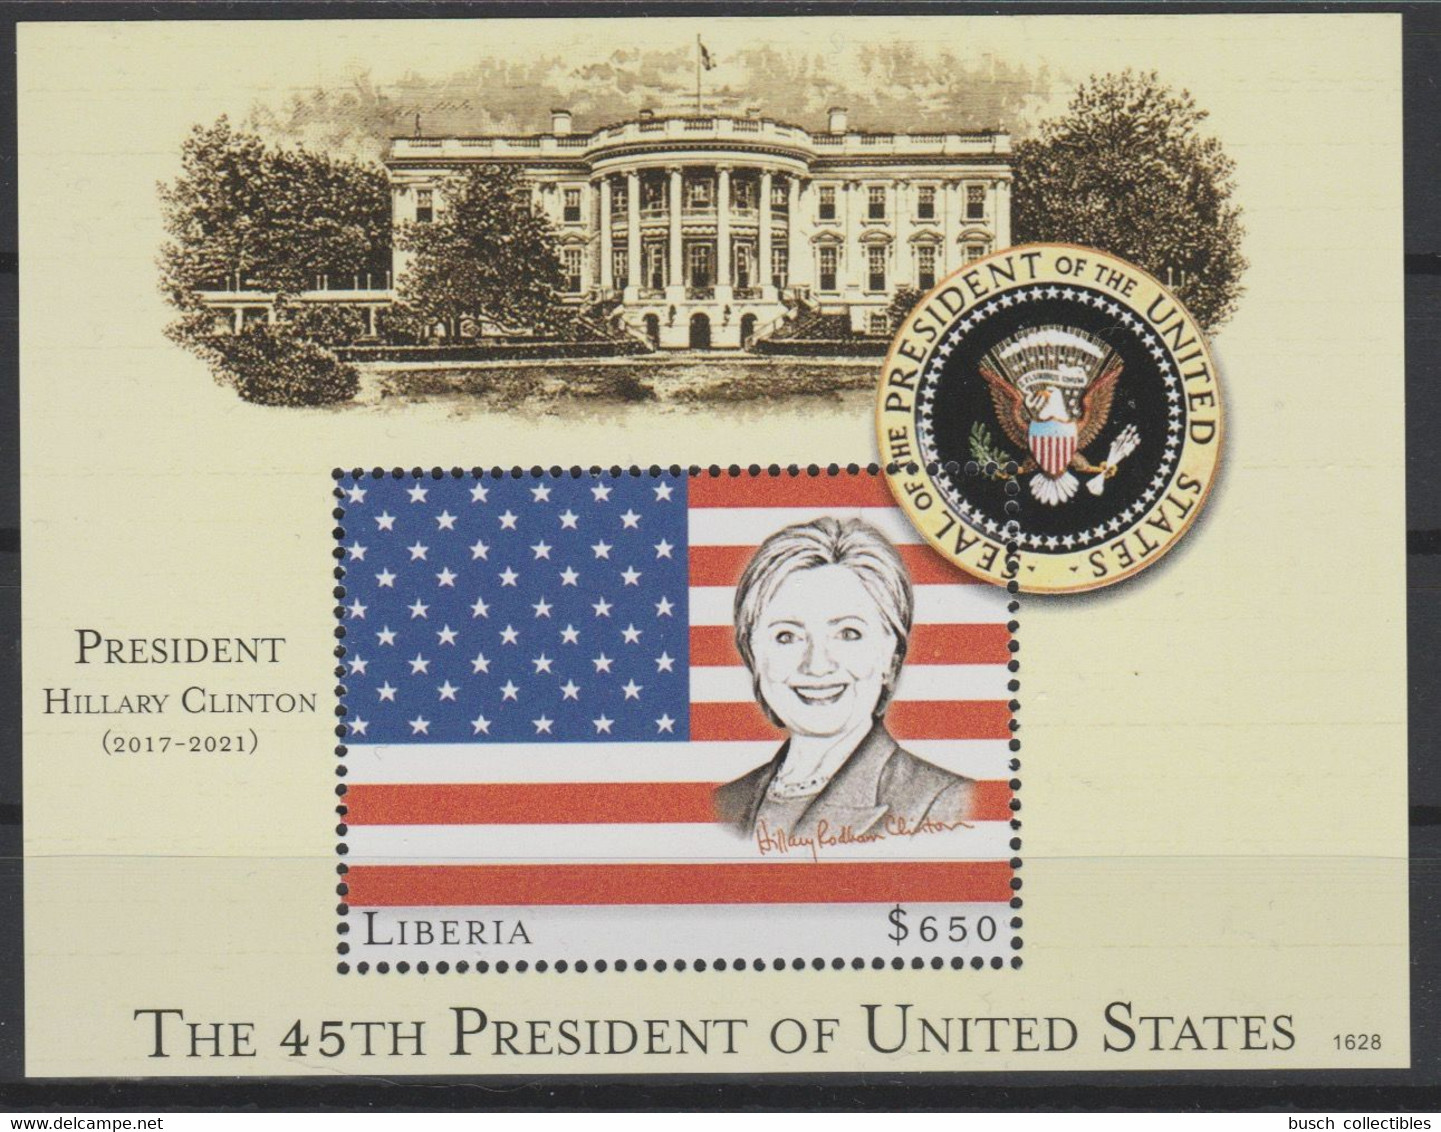 Liberia 2016 Mi. Bl. 754 UNISSUED NON EMIS Hillary Clinton 45th President United States White House Flag Stars Stripes - Liberia